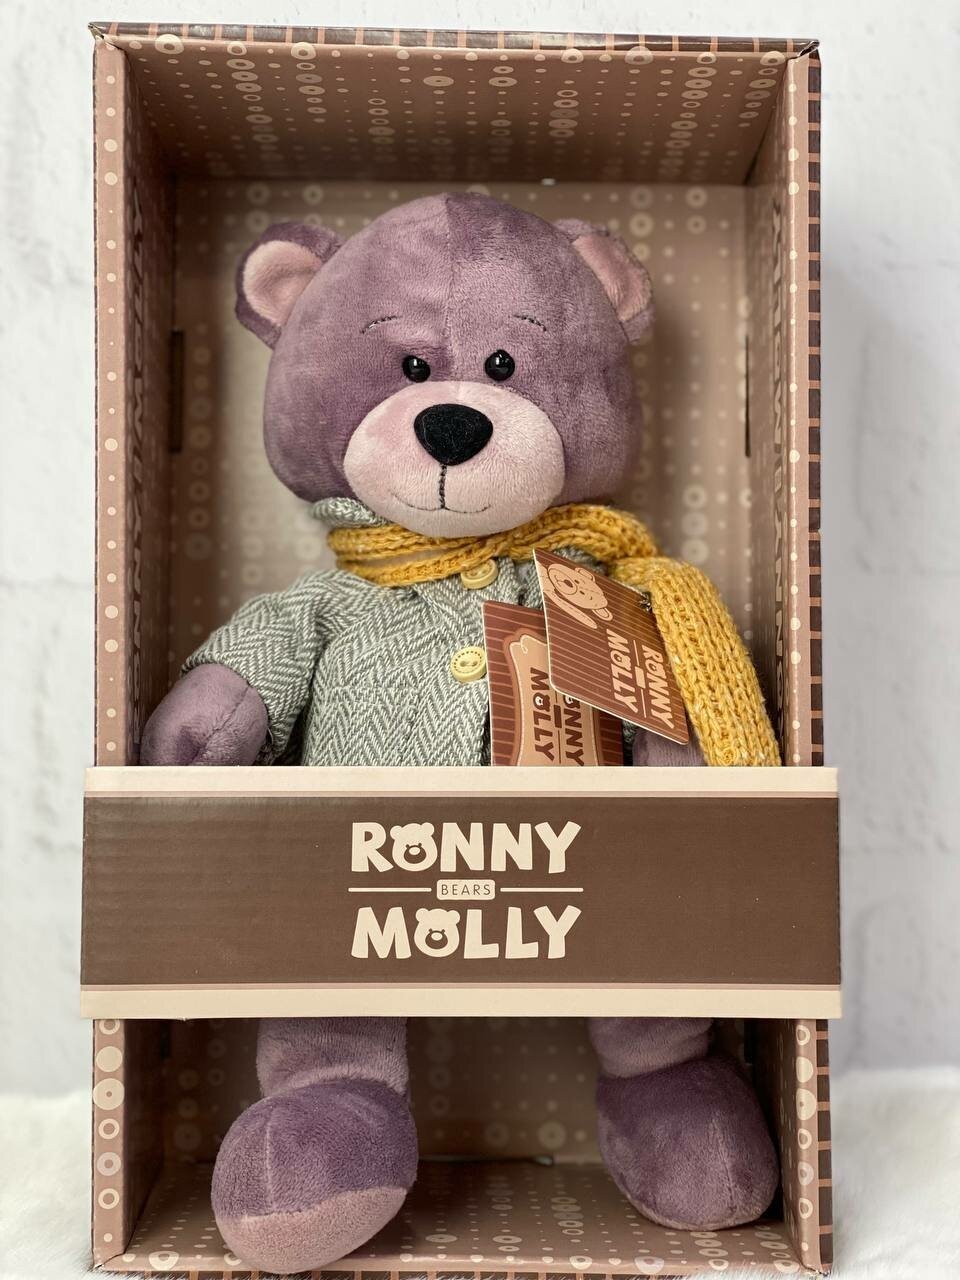 Мягкая игрушка "Ronny Molly" в коробке